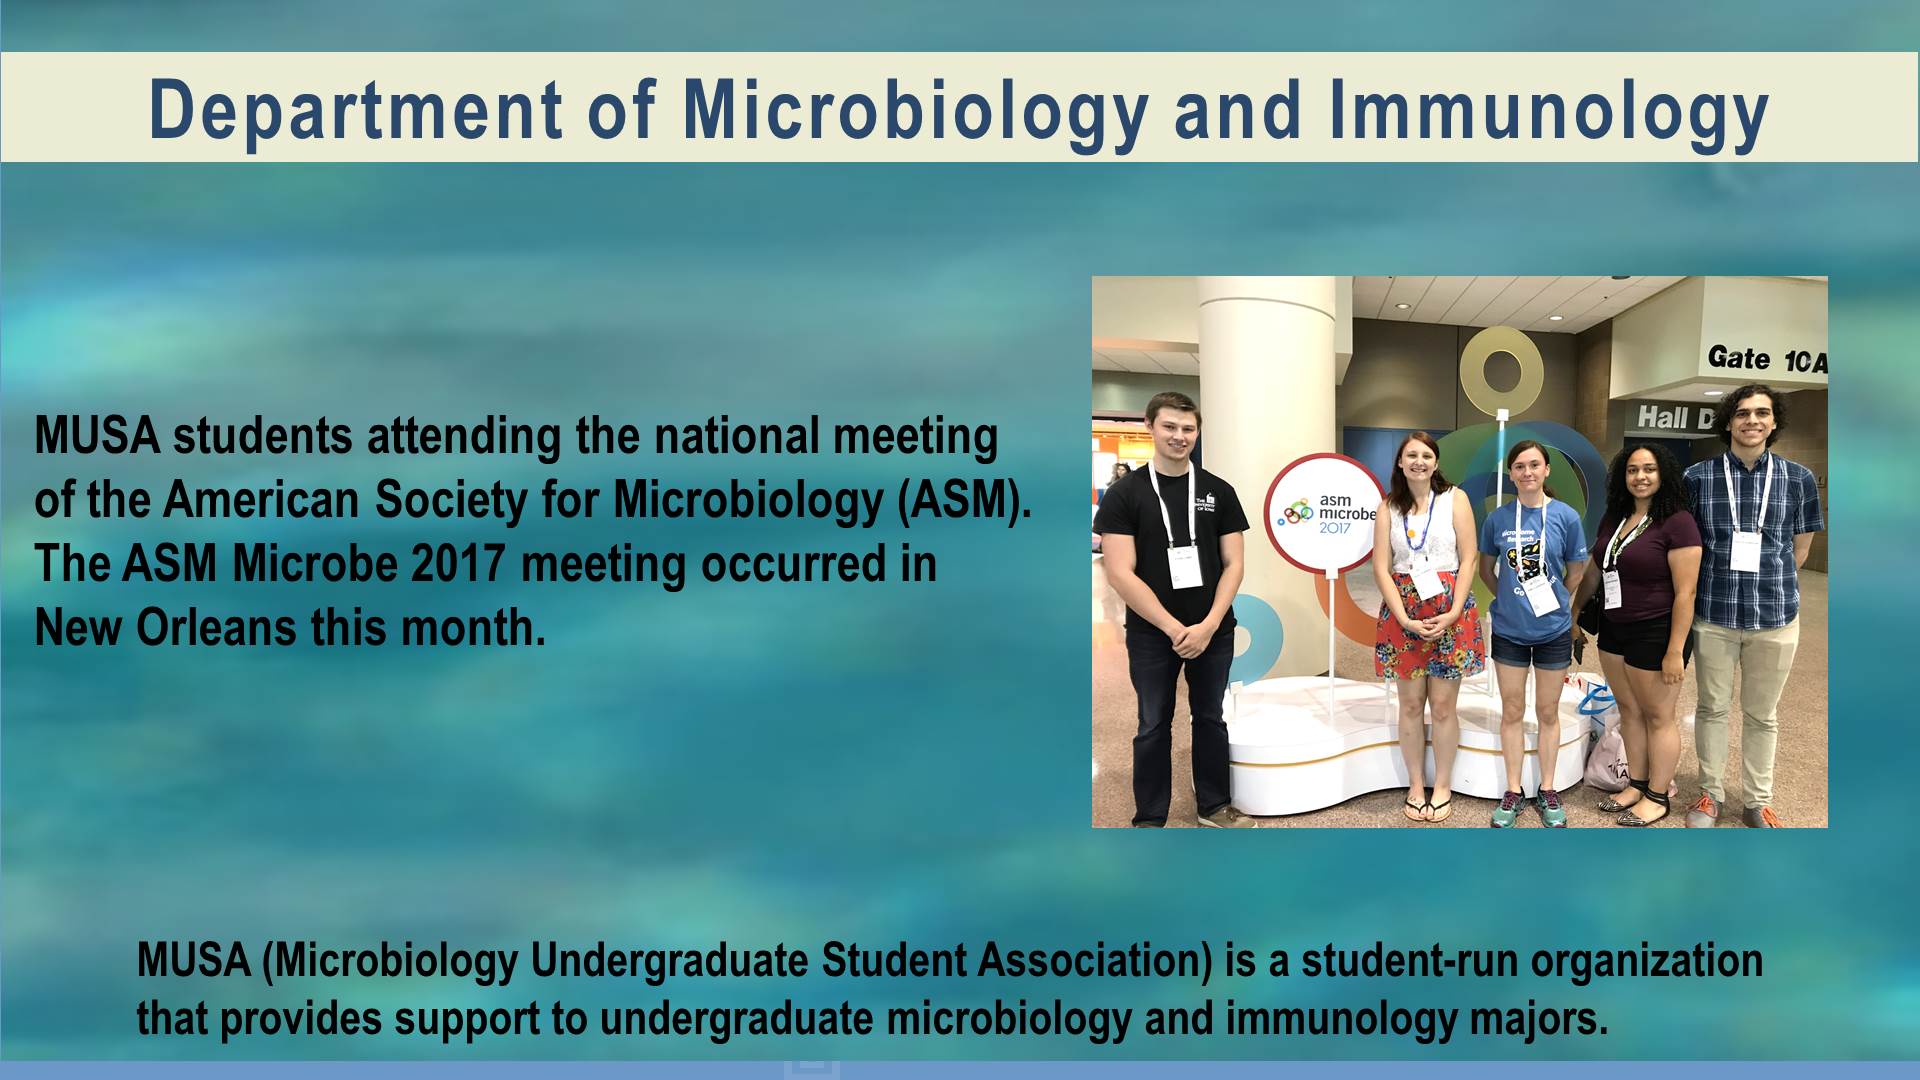 MUSA students at ASM Microbe 2017